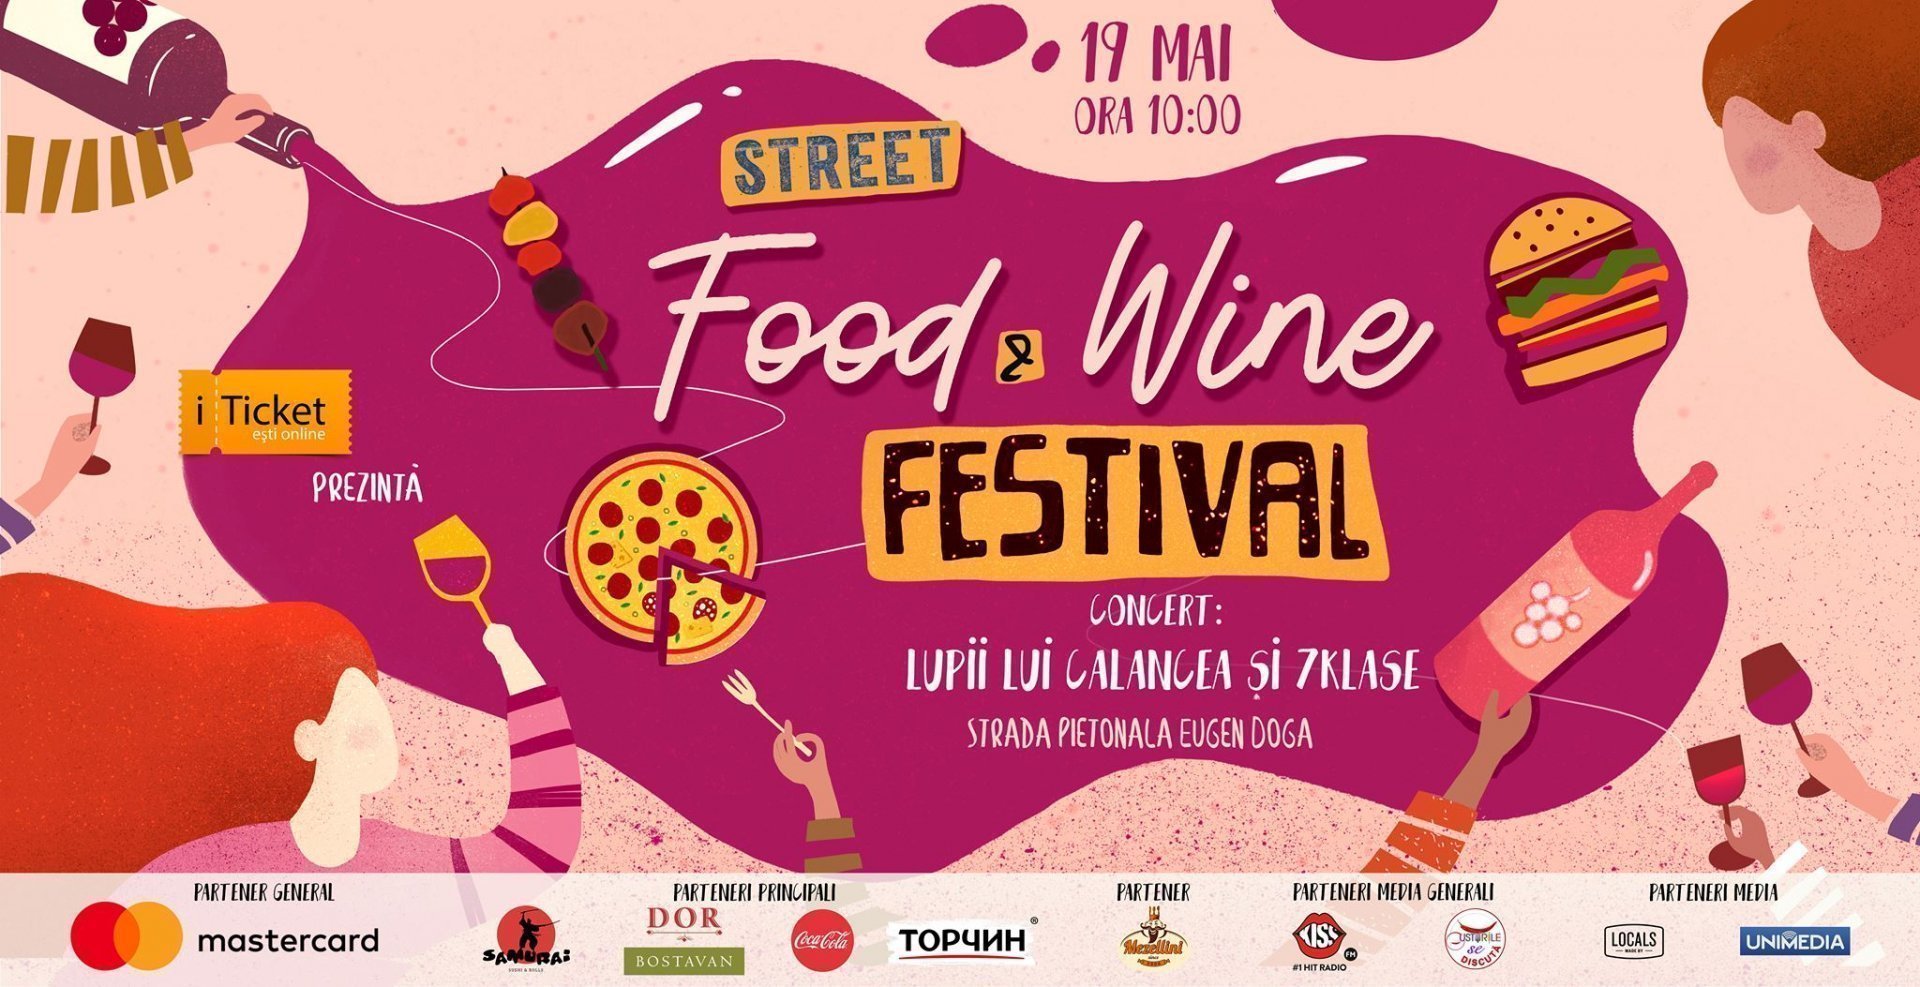 Street Food & Wine Festival 2019